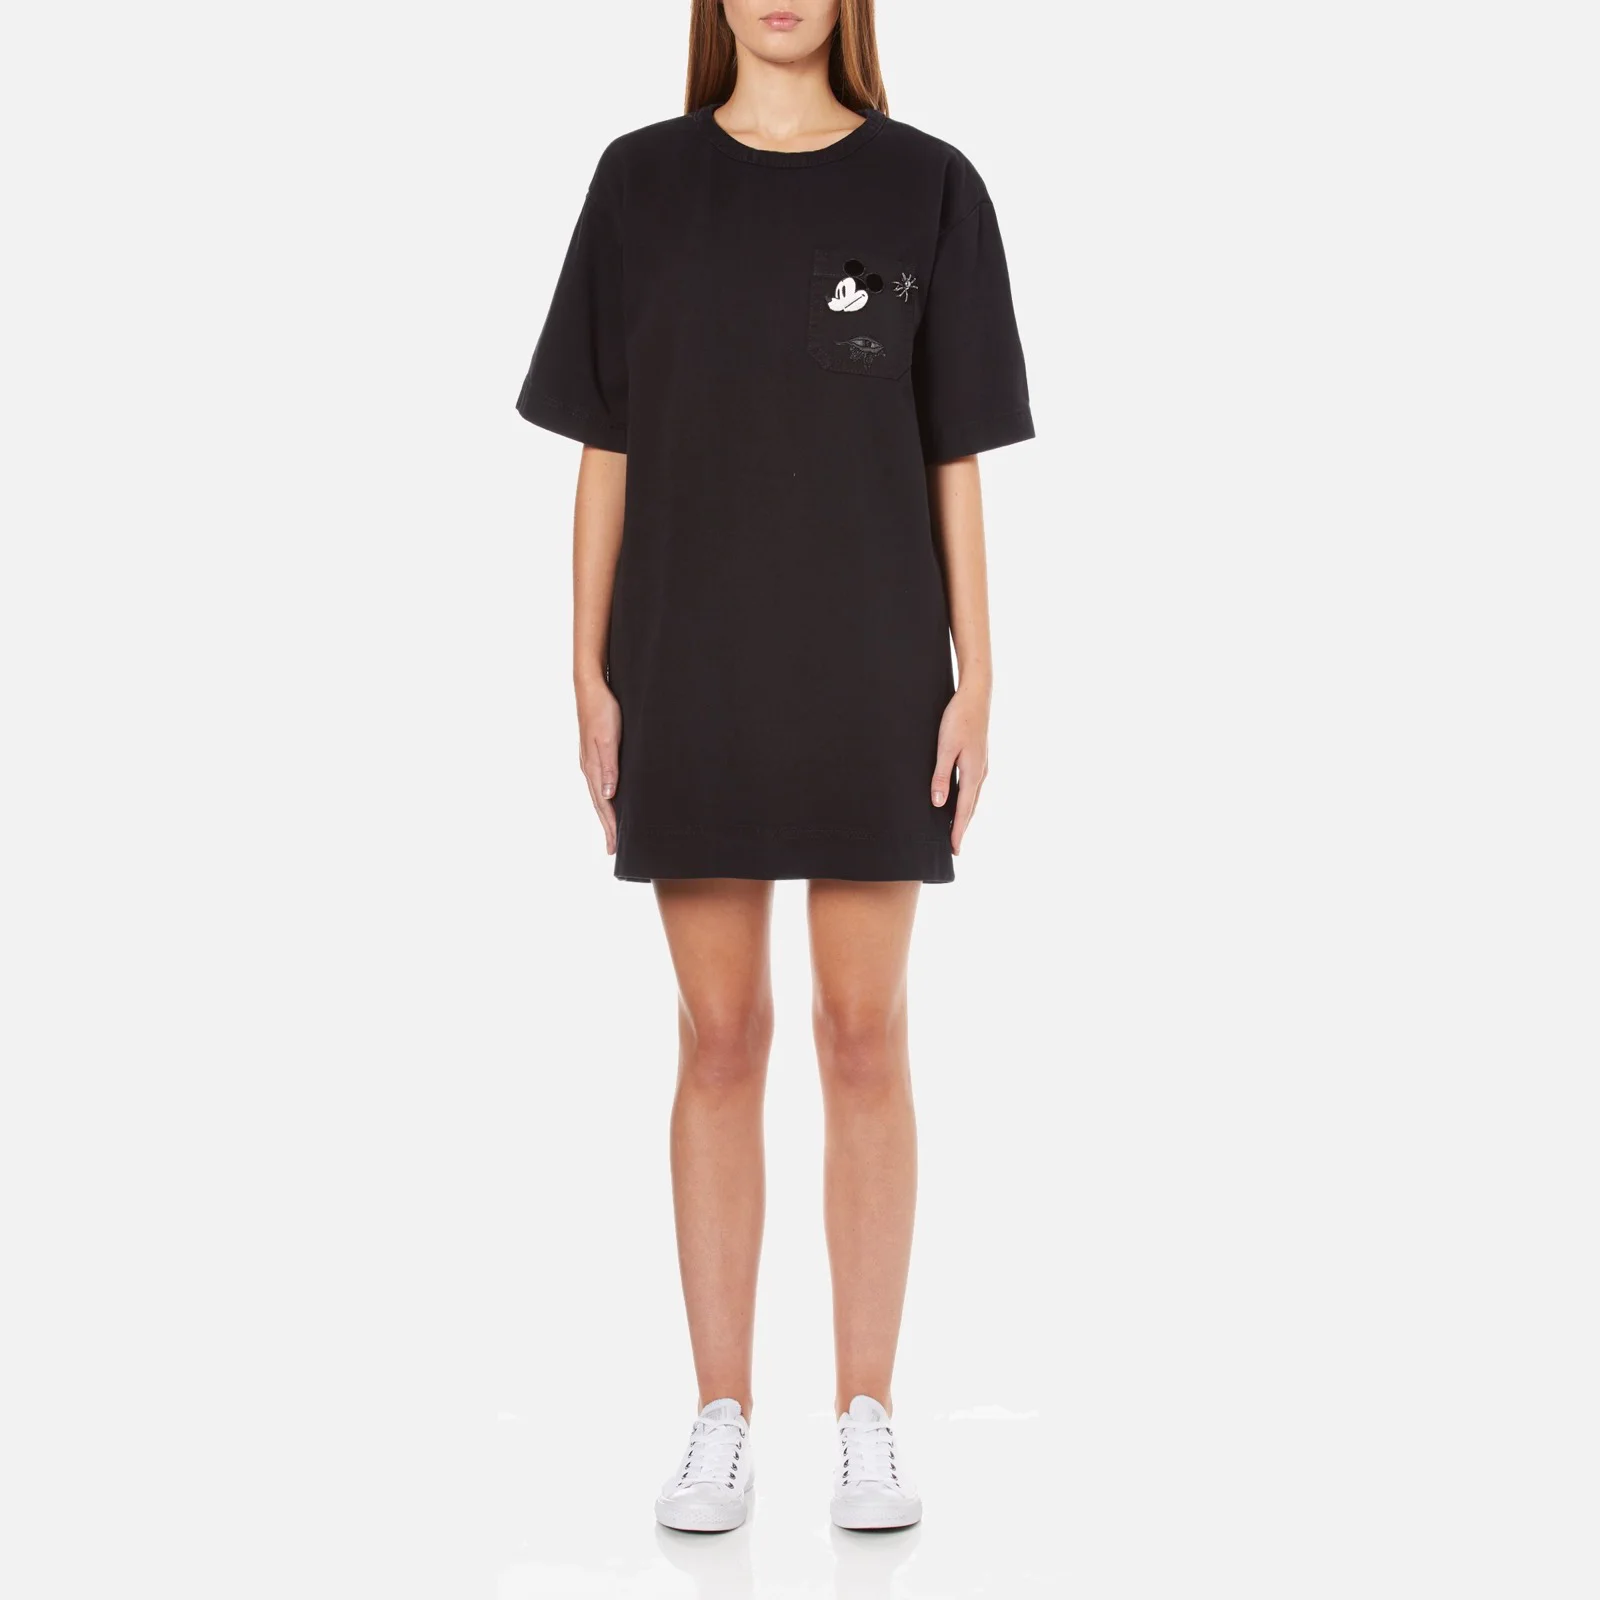 Marc Jacobs Women's T-Shirt Dress with Emblem - Black Image 1